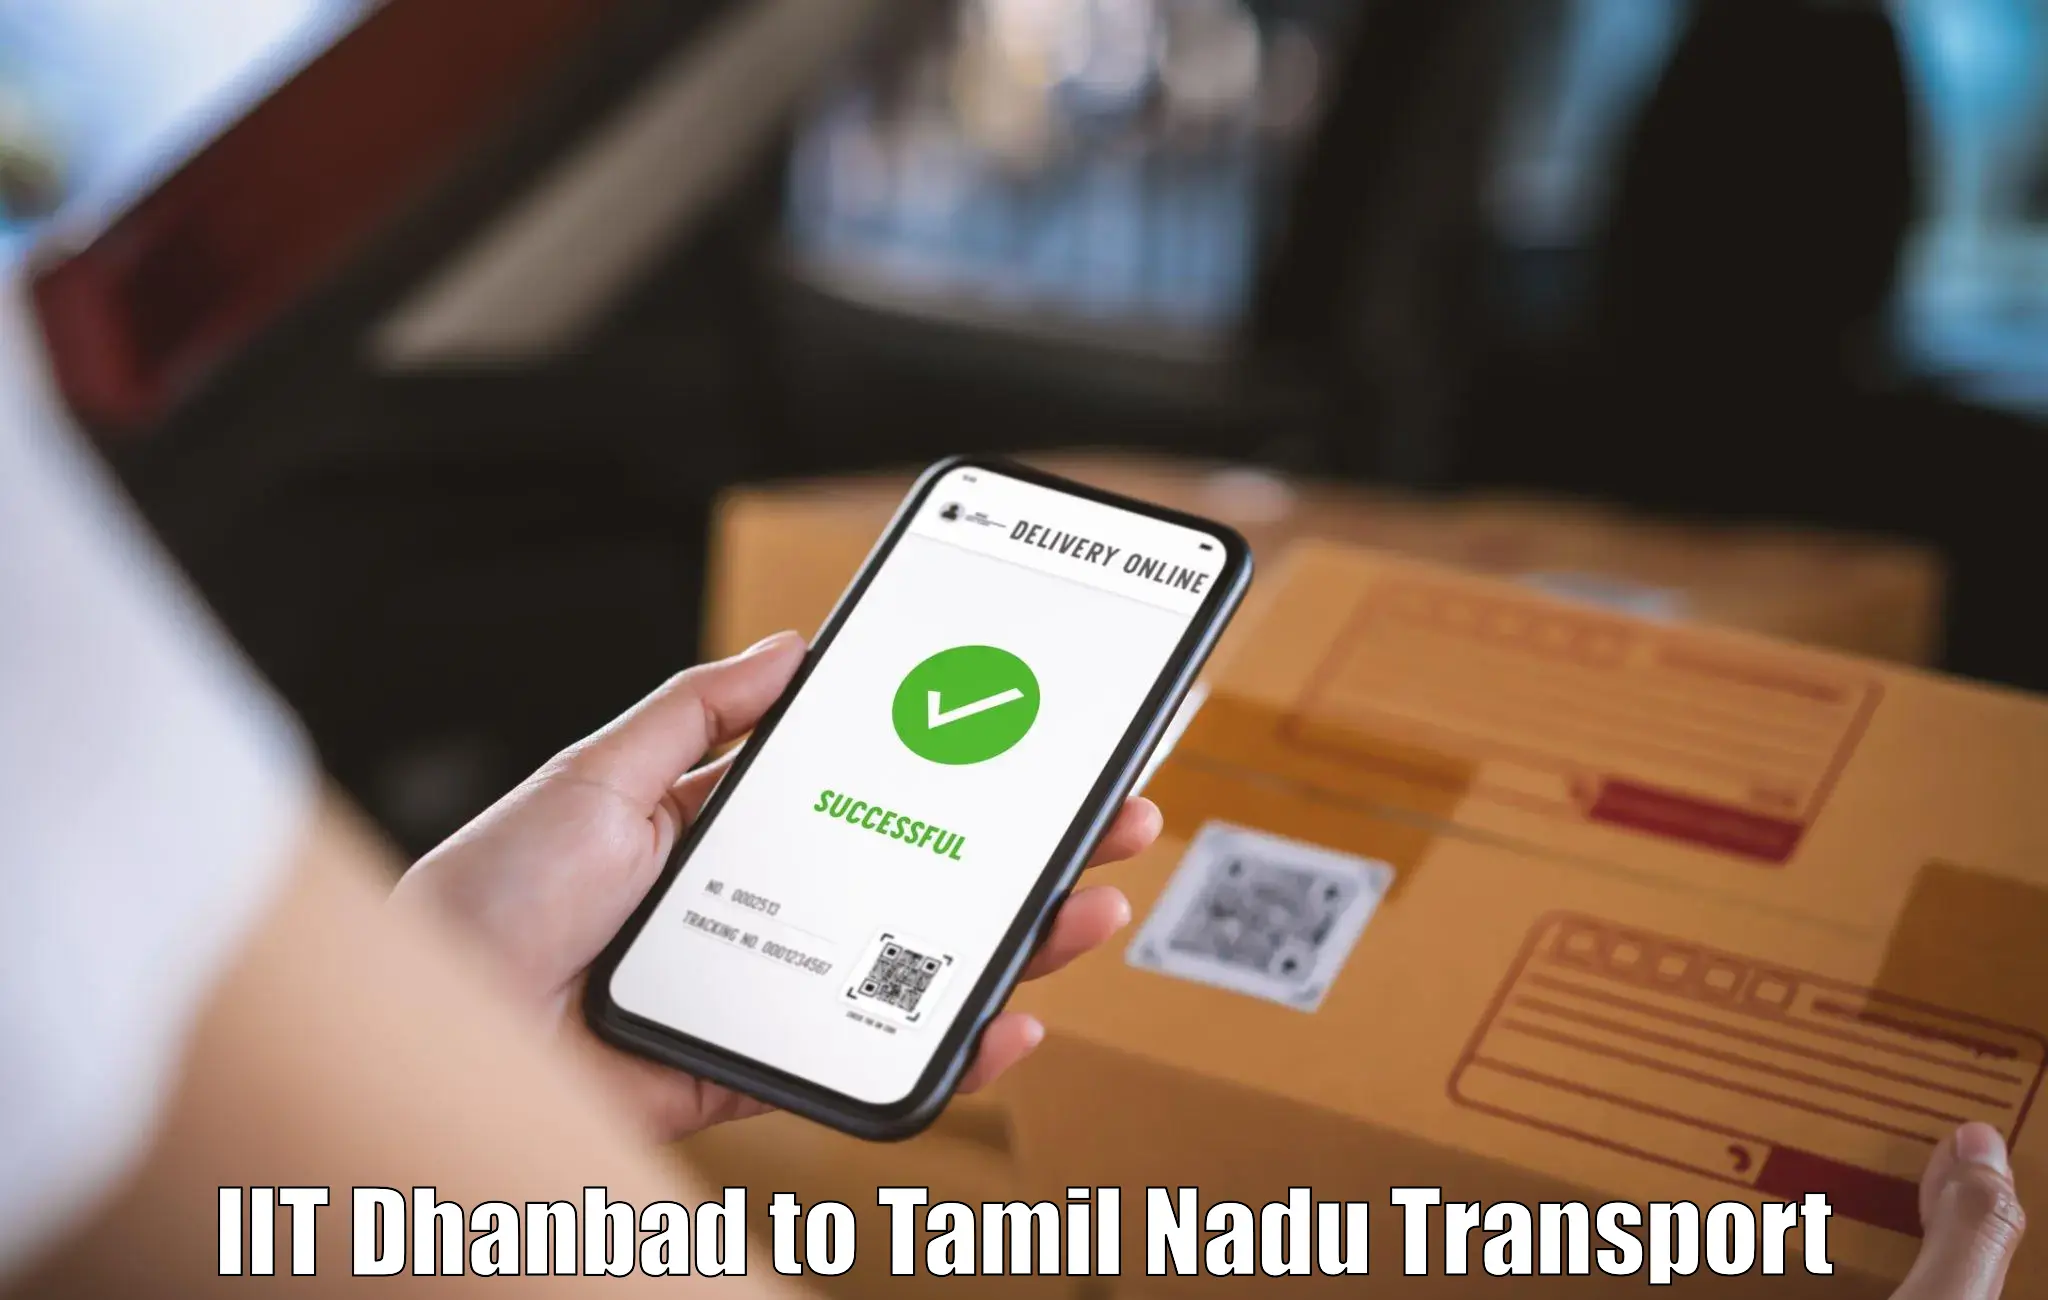 Container transport service IIT Dhanbad to Orathanadu